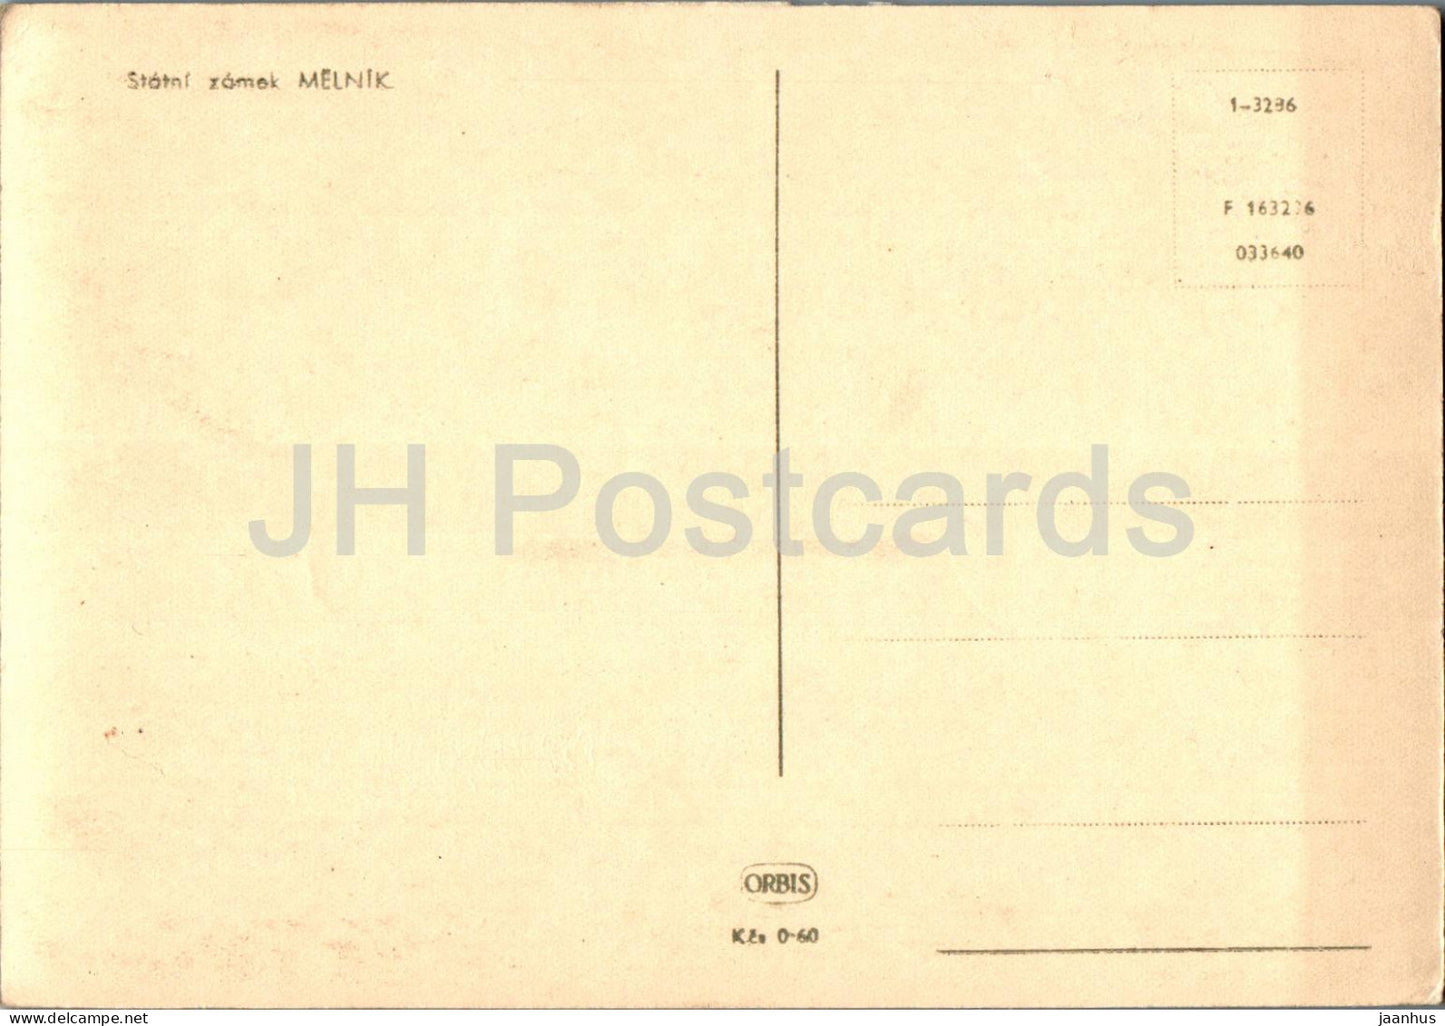 Statni zamek Melnik - Château d'État Melnik - 1-3286 - carte postale ancienne - République tchèque - Tchécoslovaquie - inutilisé